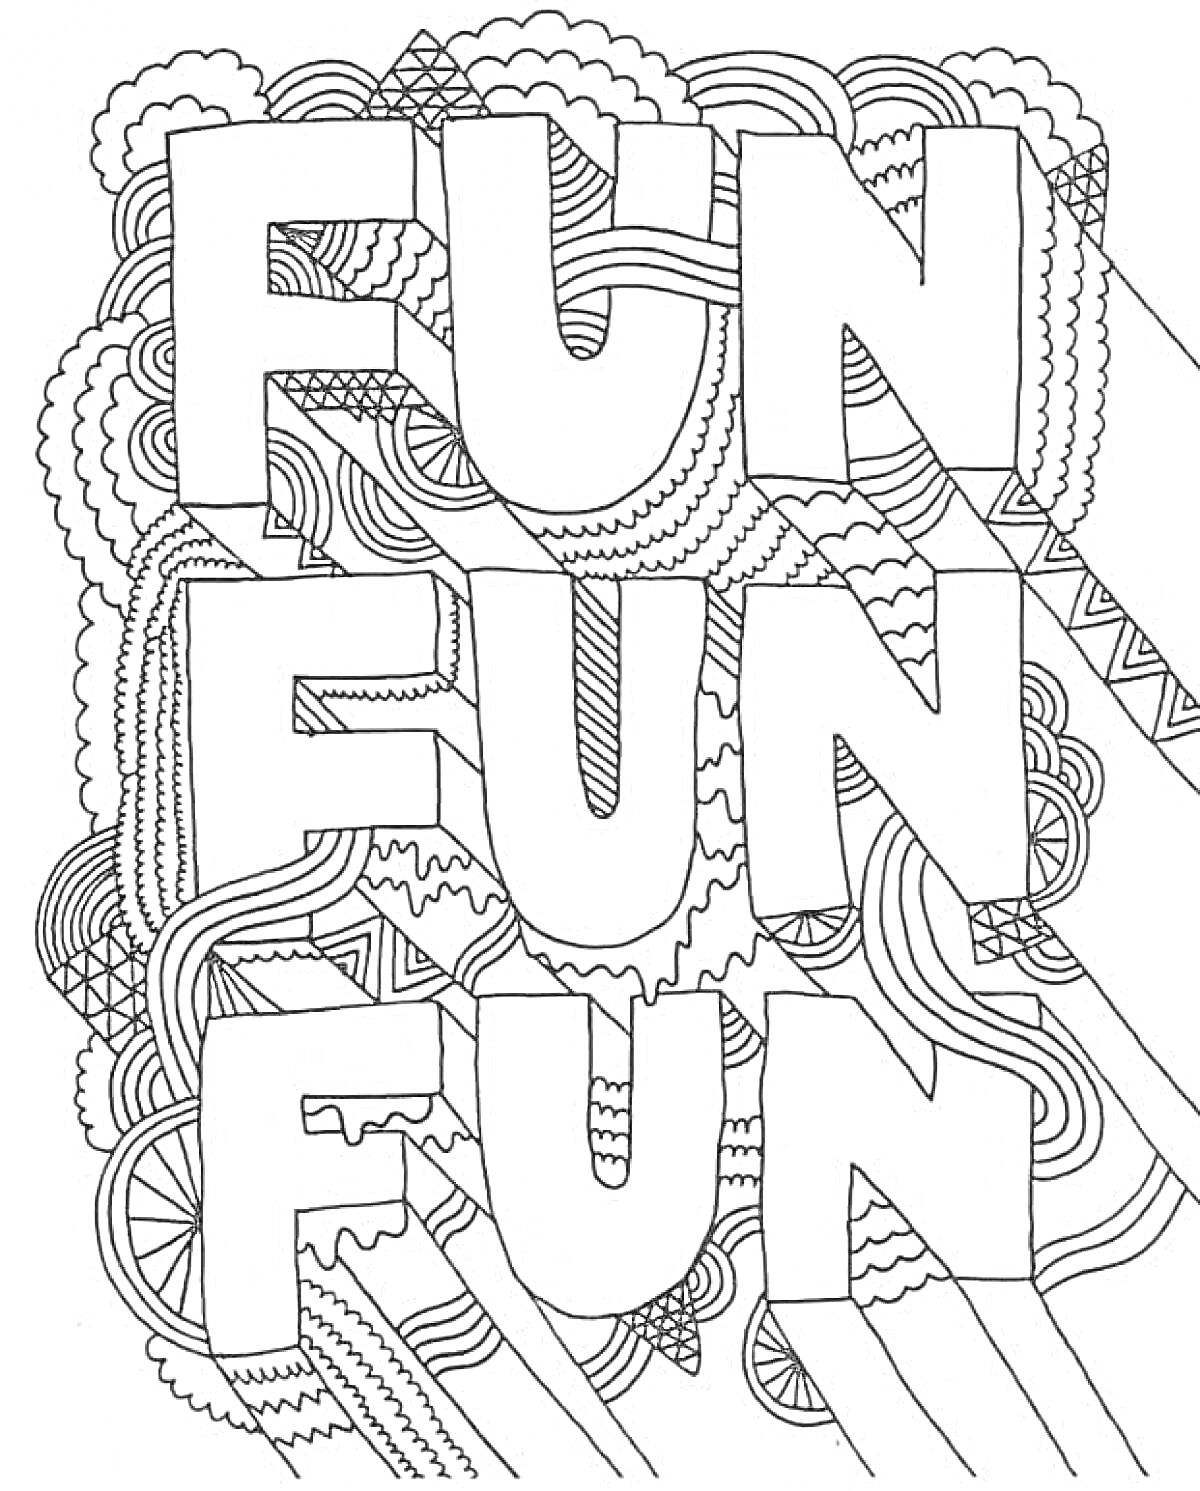 Раскраска слово FUN, повторенное трижды, окруженное абстрактными узорами